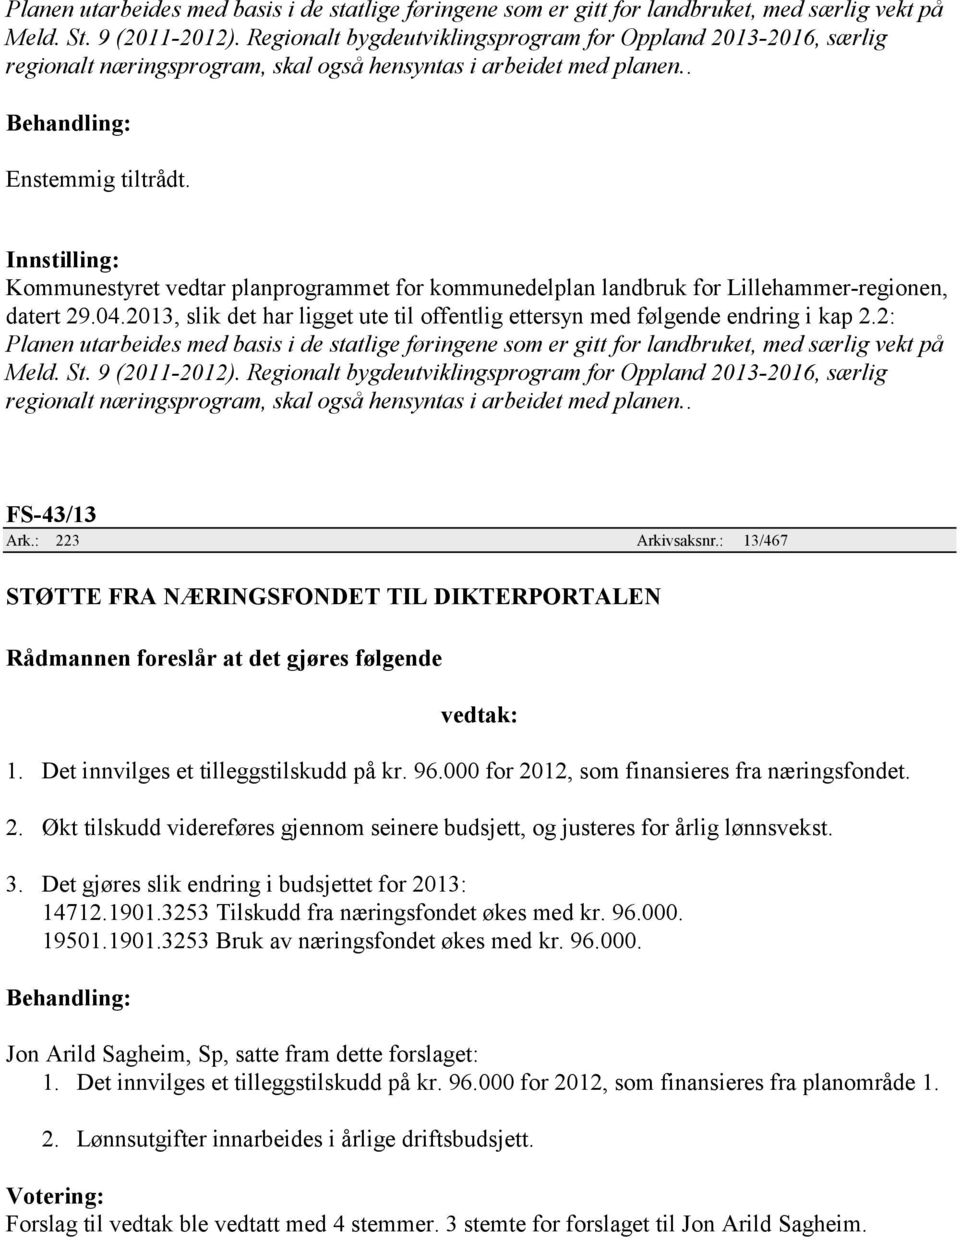 . Kommunestyret vedtar planprogrammet for kommunedelplan landbruk for Lillehammer-regionen, datert 29.04.2013, slik det har ligget ute til offentlig ettersyn med følgende endring i kap 2.2:  .